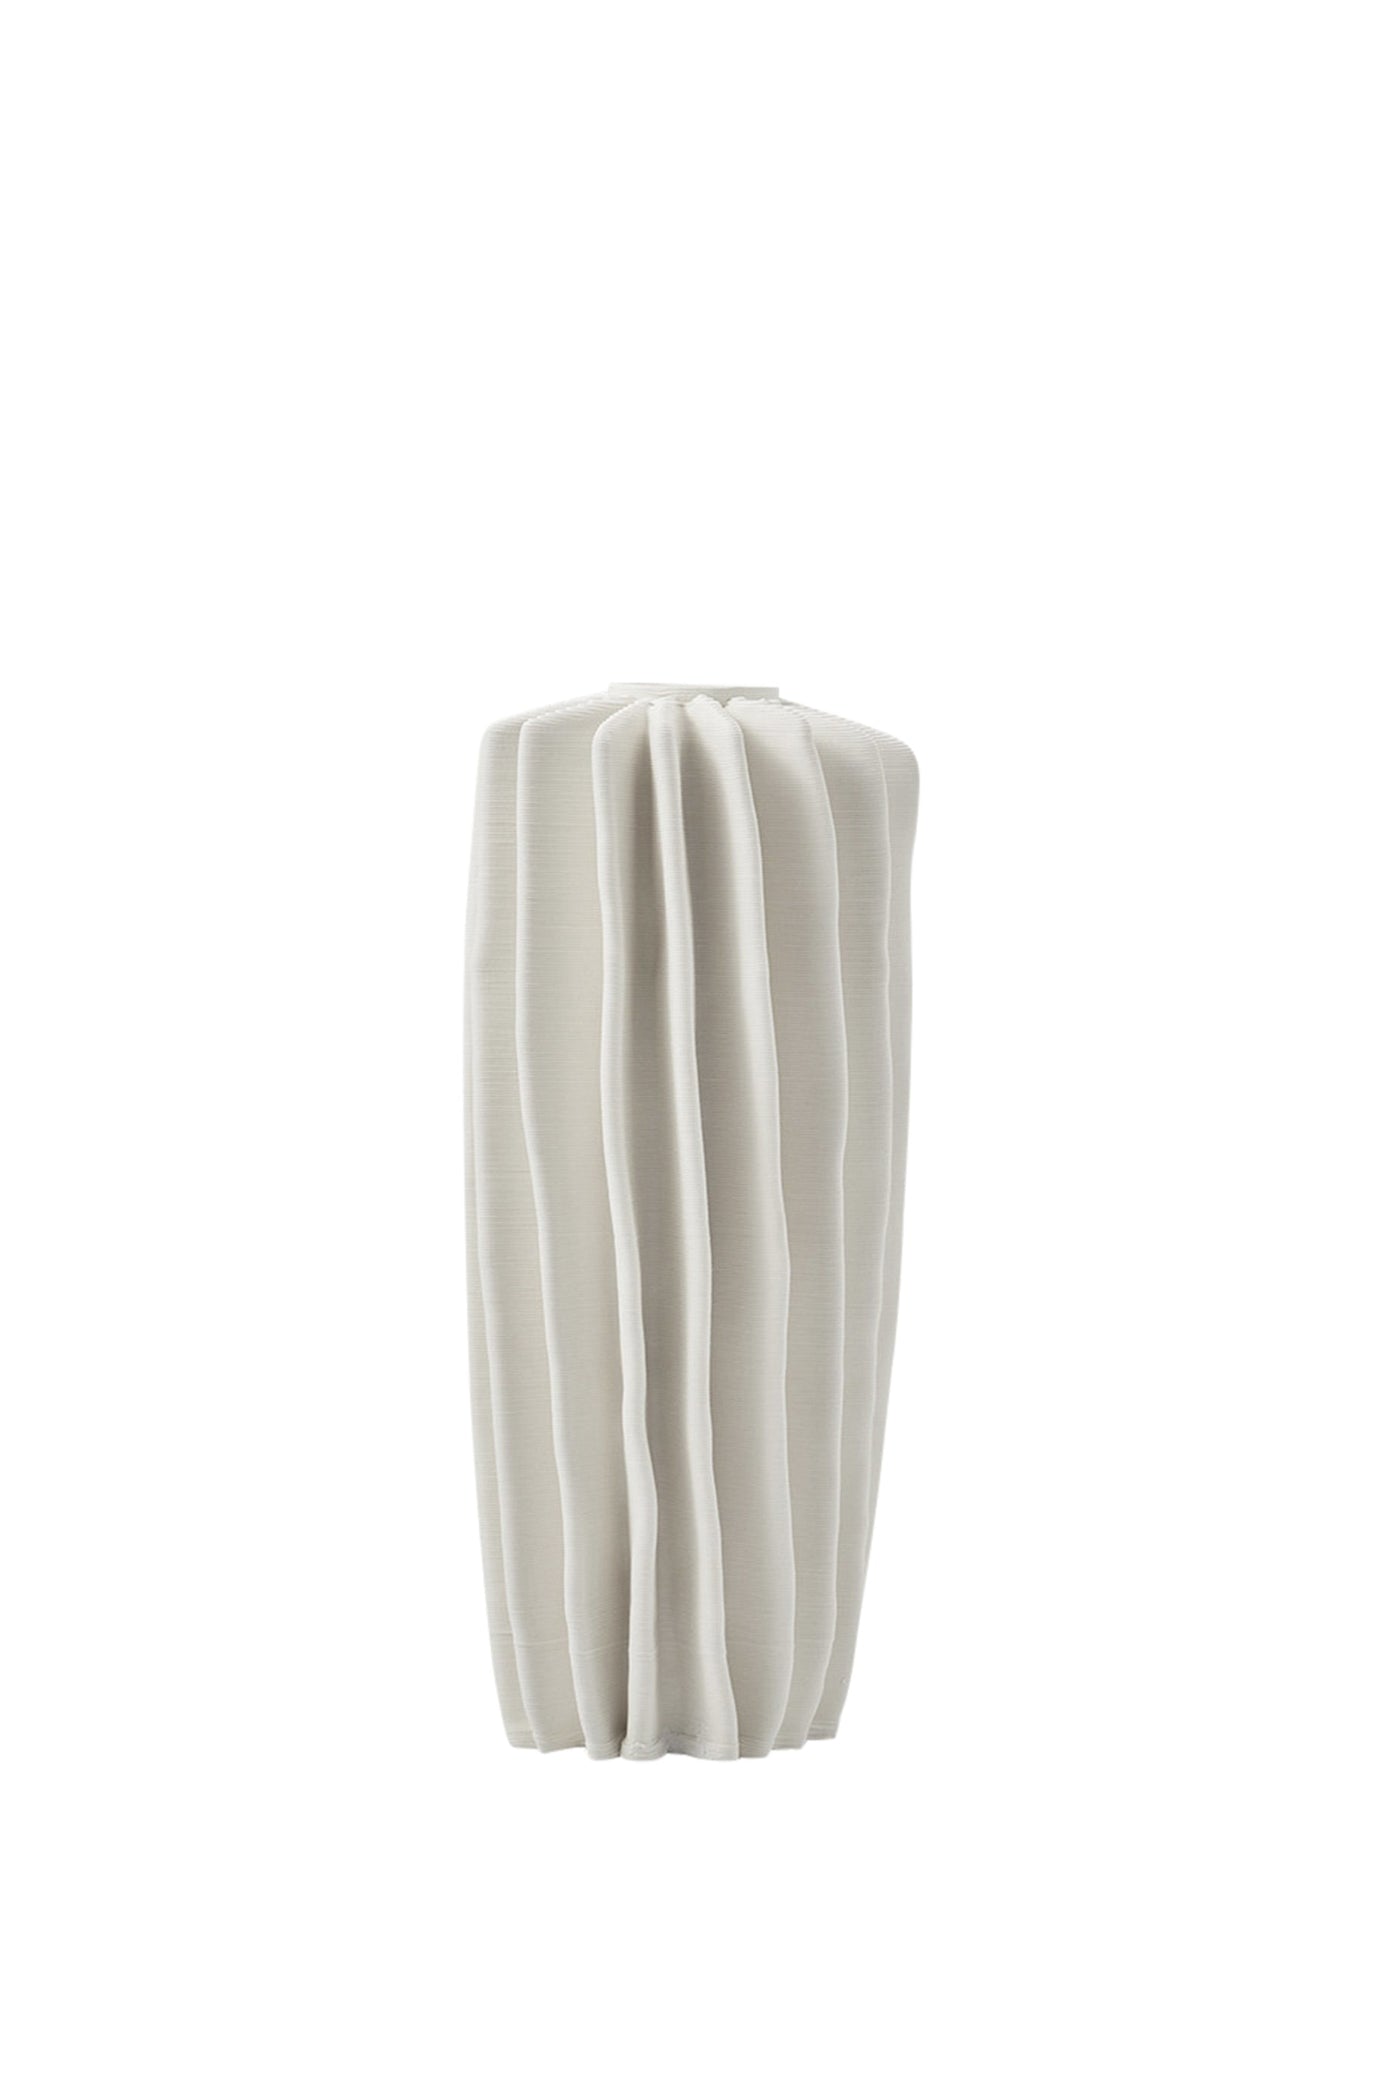 Husk Coral Vase - Ivory